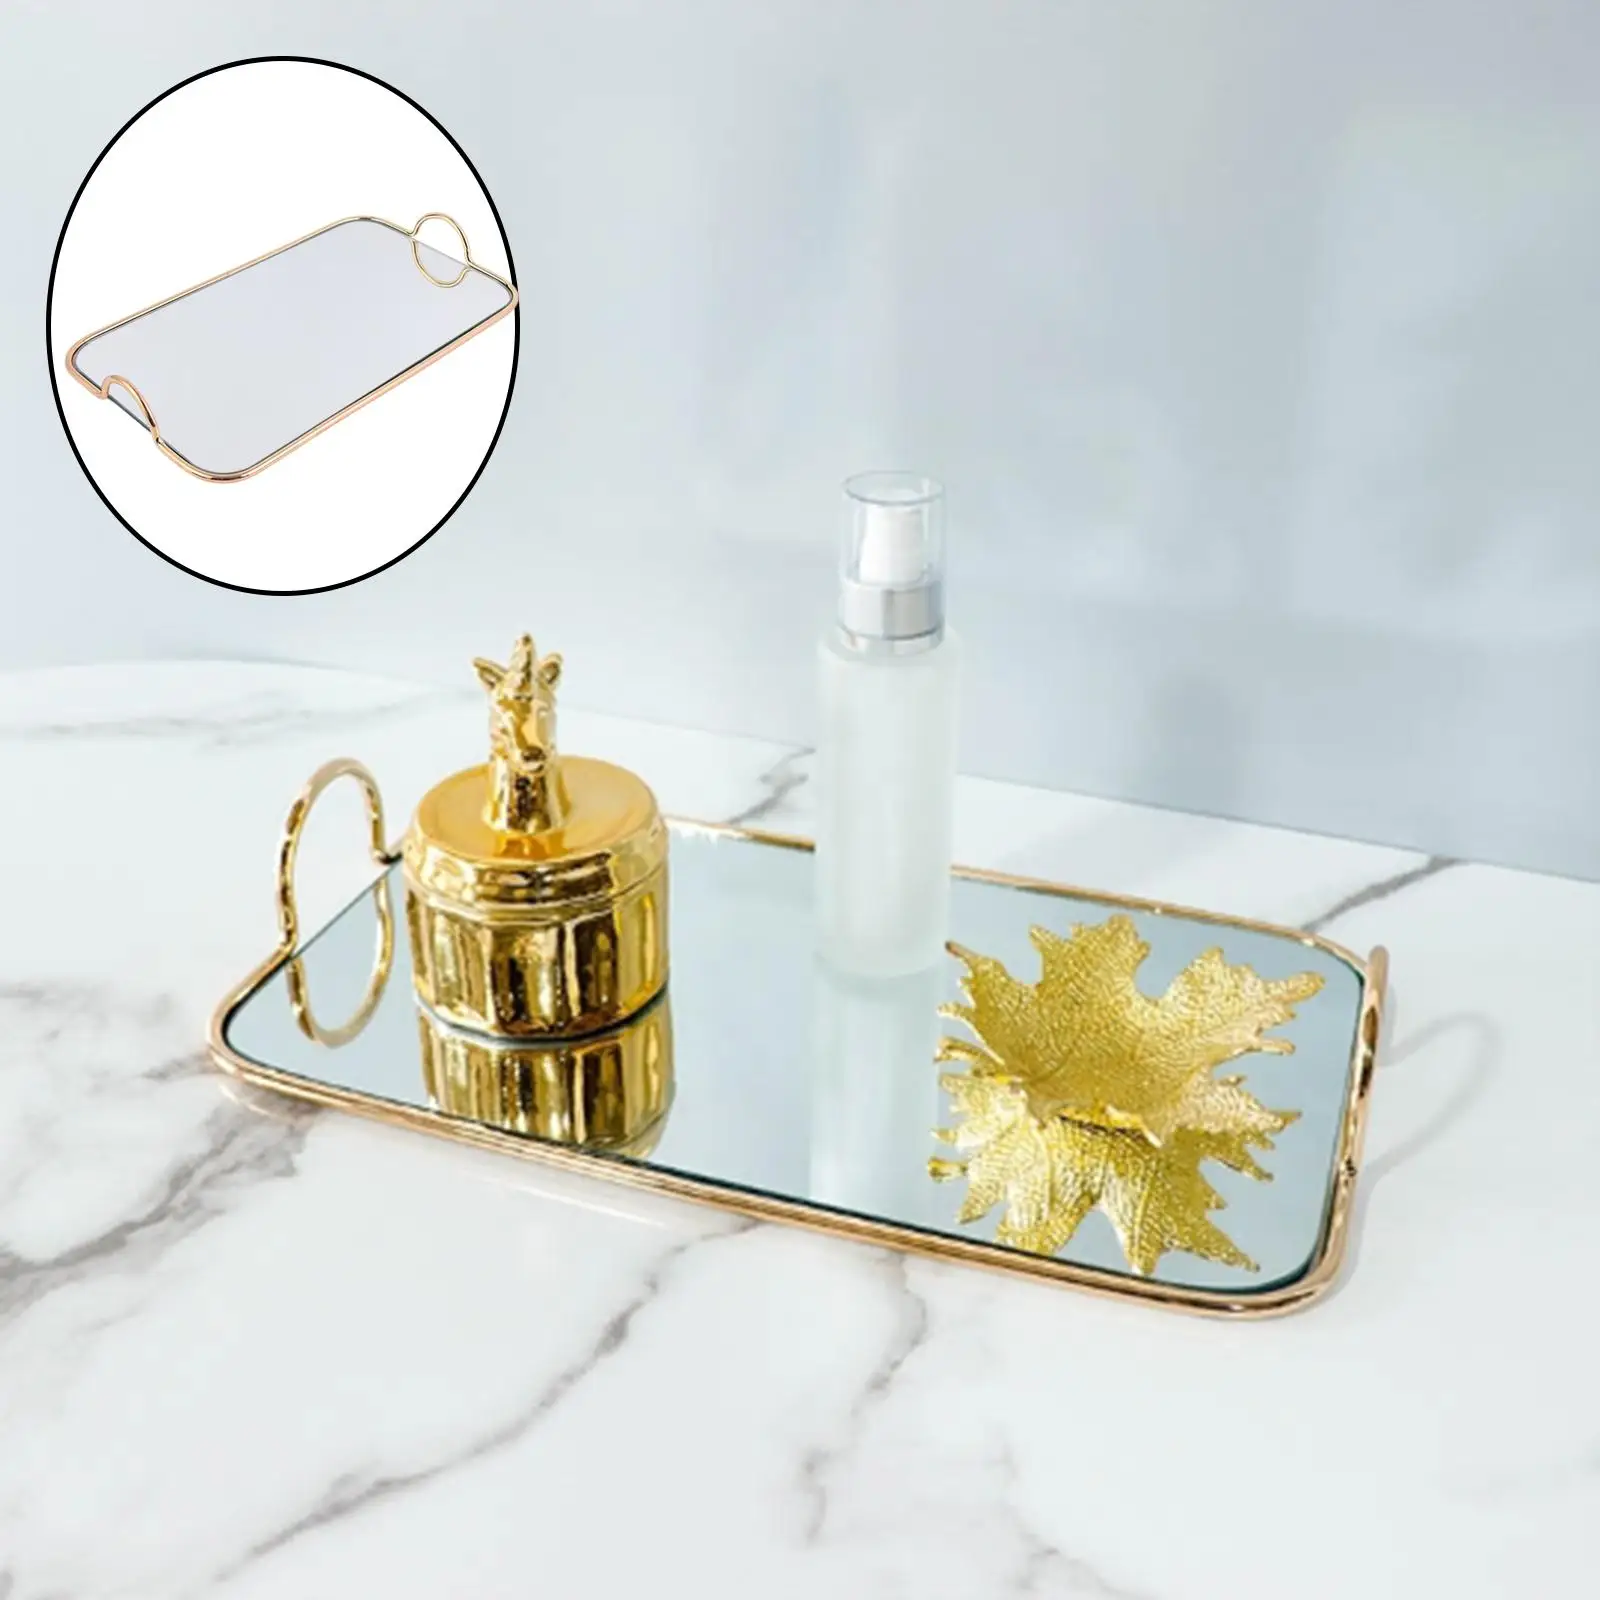 Decorative Tray with Handle, Mirror Tray, Vanity Tray Jewelry Perfume Organizer